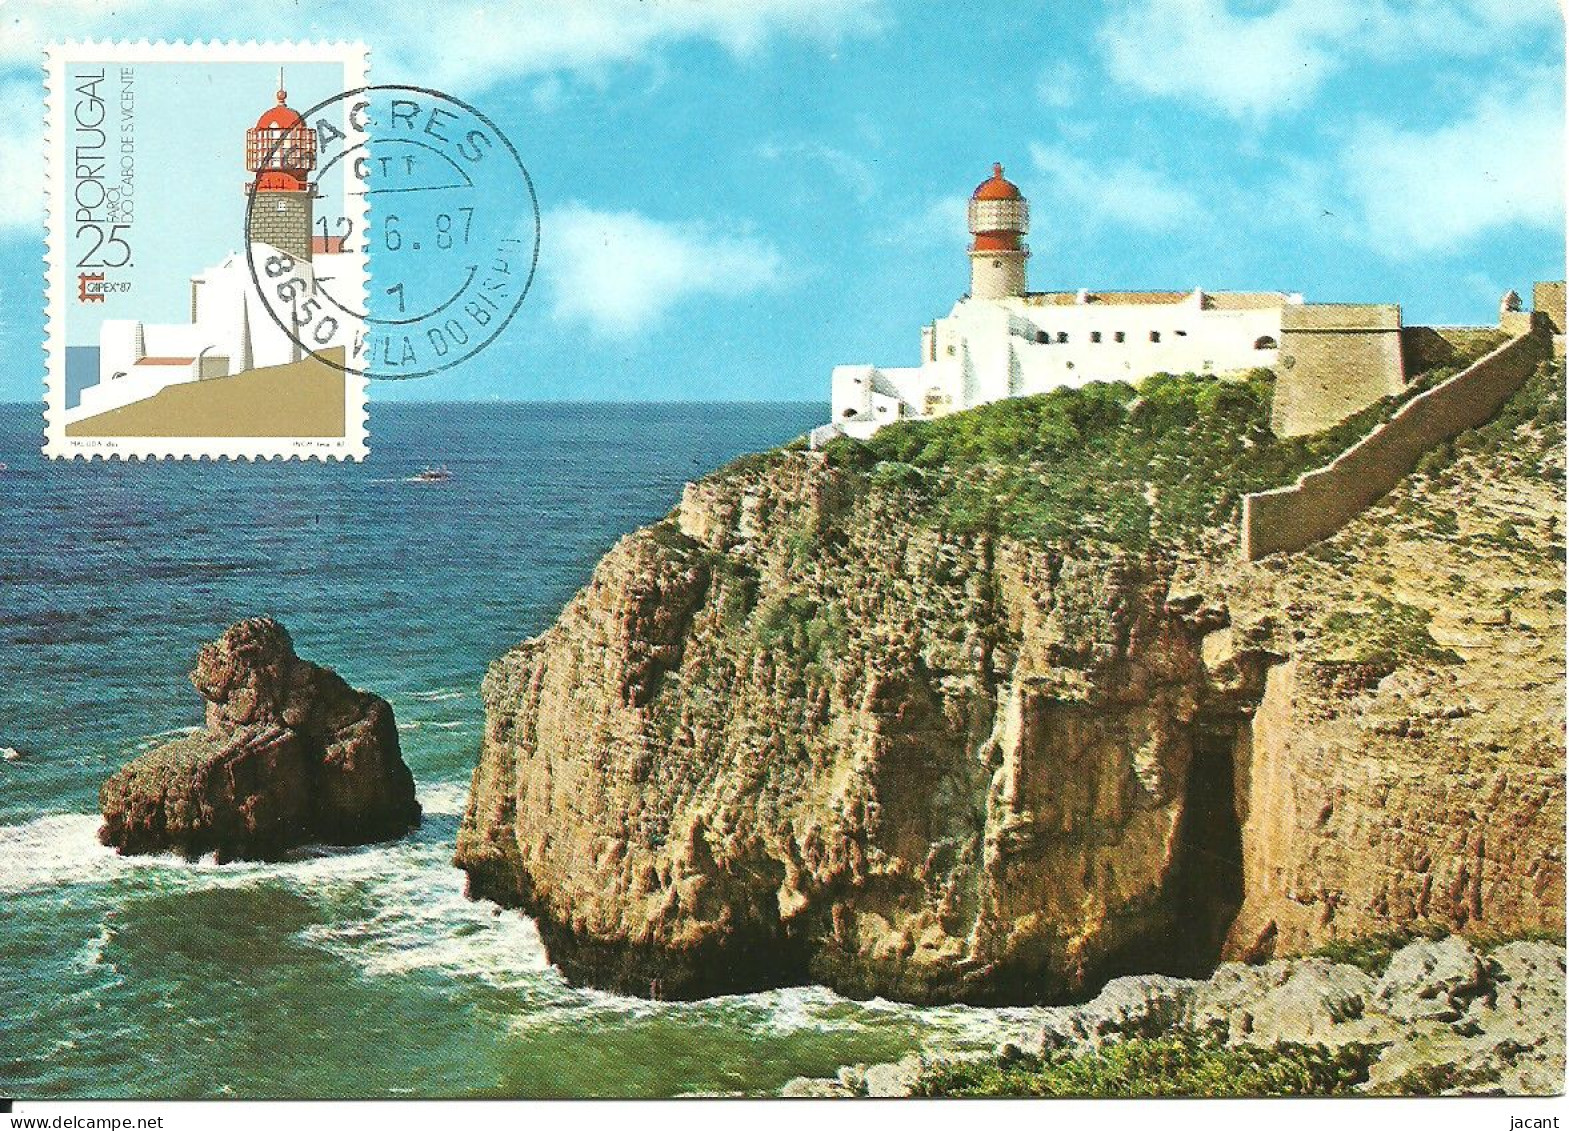 30851 - Carte Maximum - Portugal - Farol Do Cabo De S. Vicente Sagres - Phare - Lighthouse - Cartoline Maximum